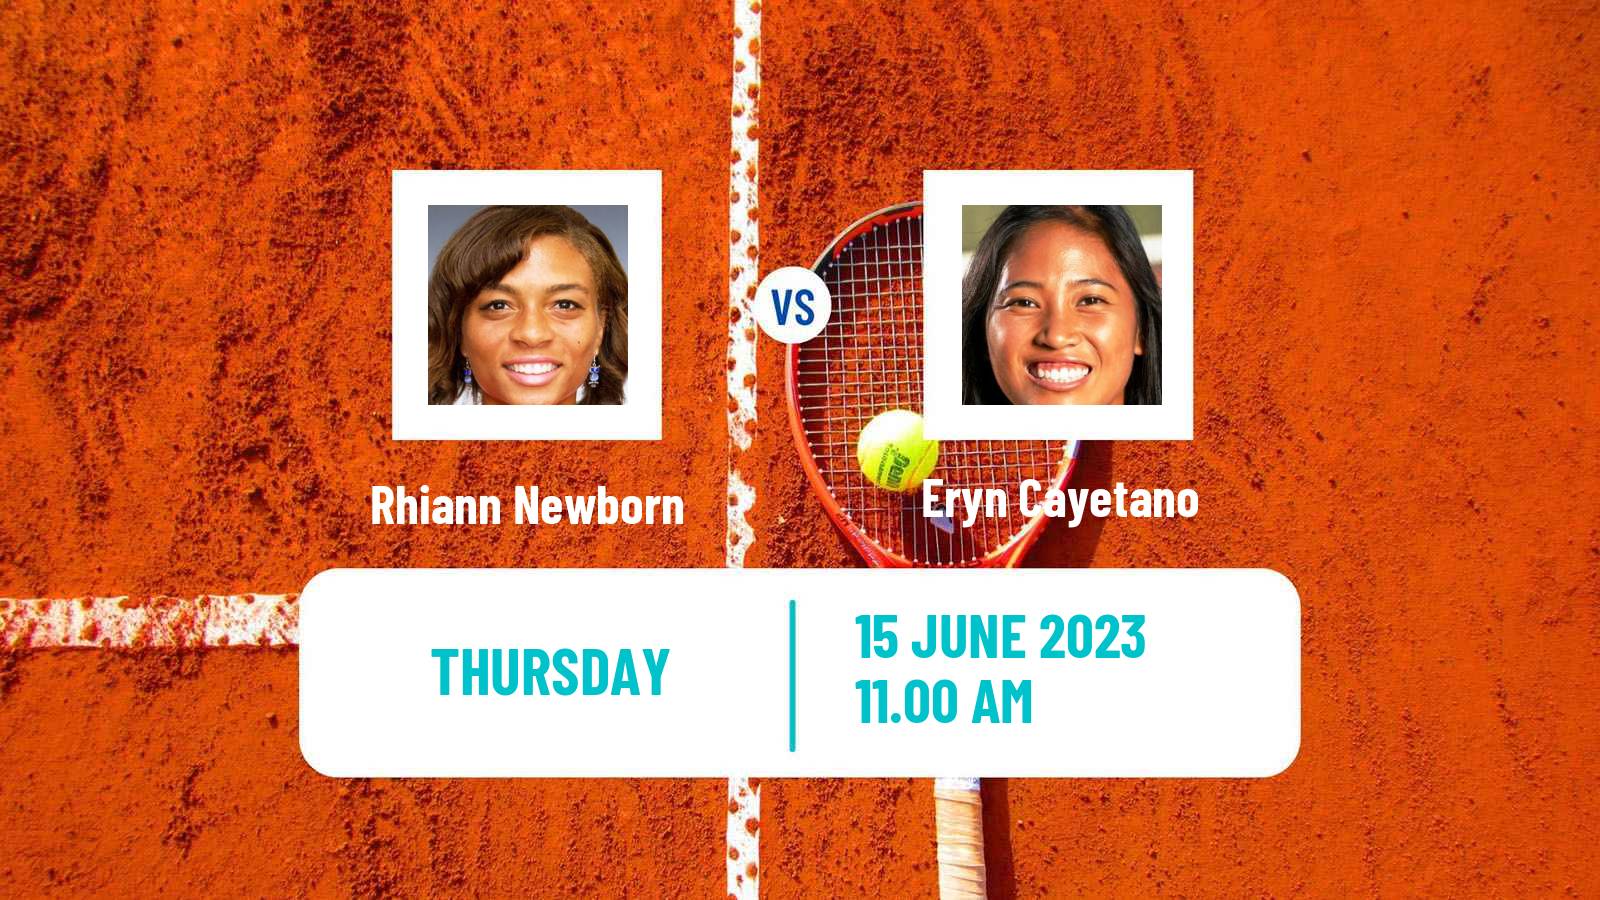 Tennis ITF W25 Colorado Springs Women Rhiann Newborn - Eryn Cayetano